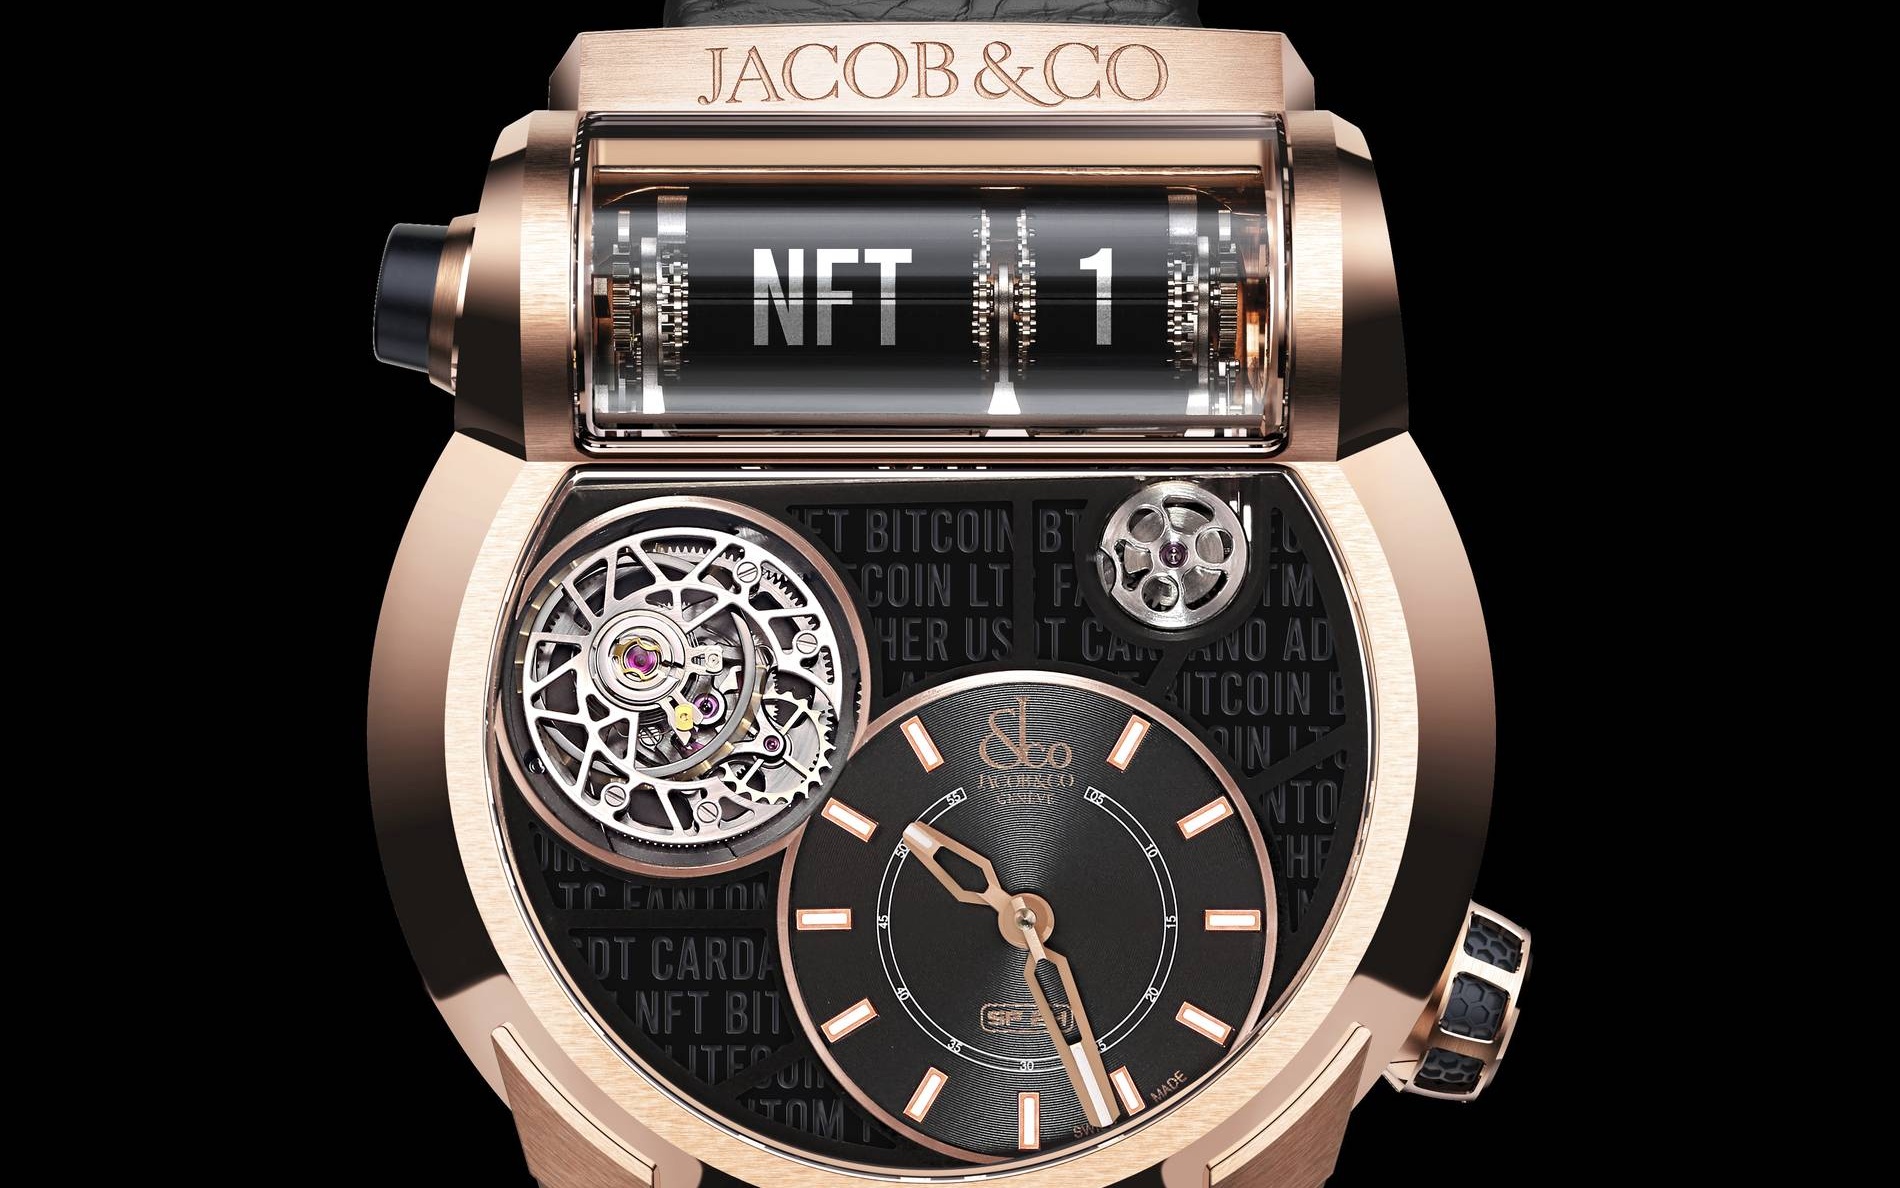 Jacob & Co sf24 nft watch